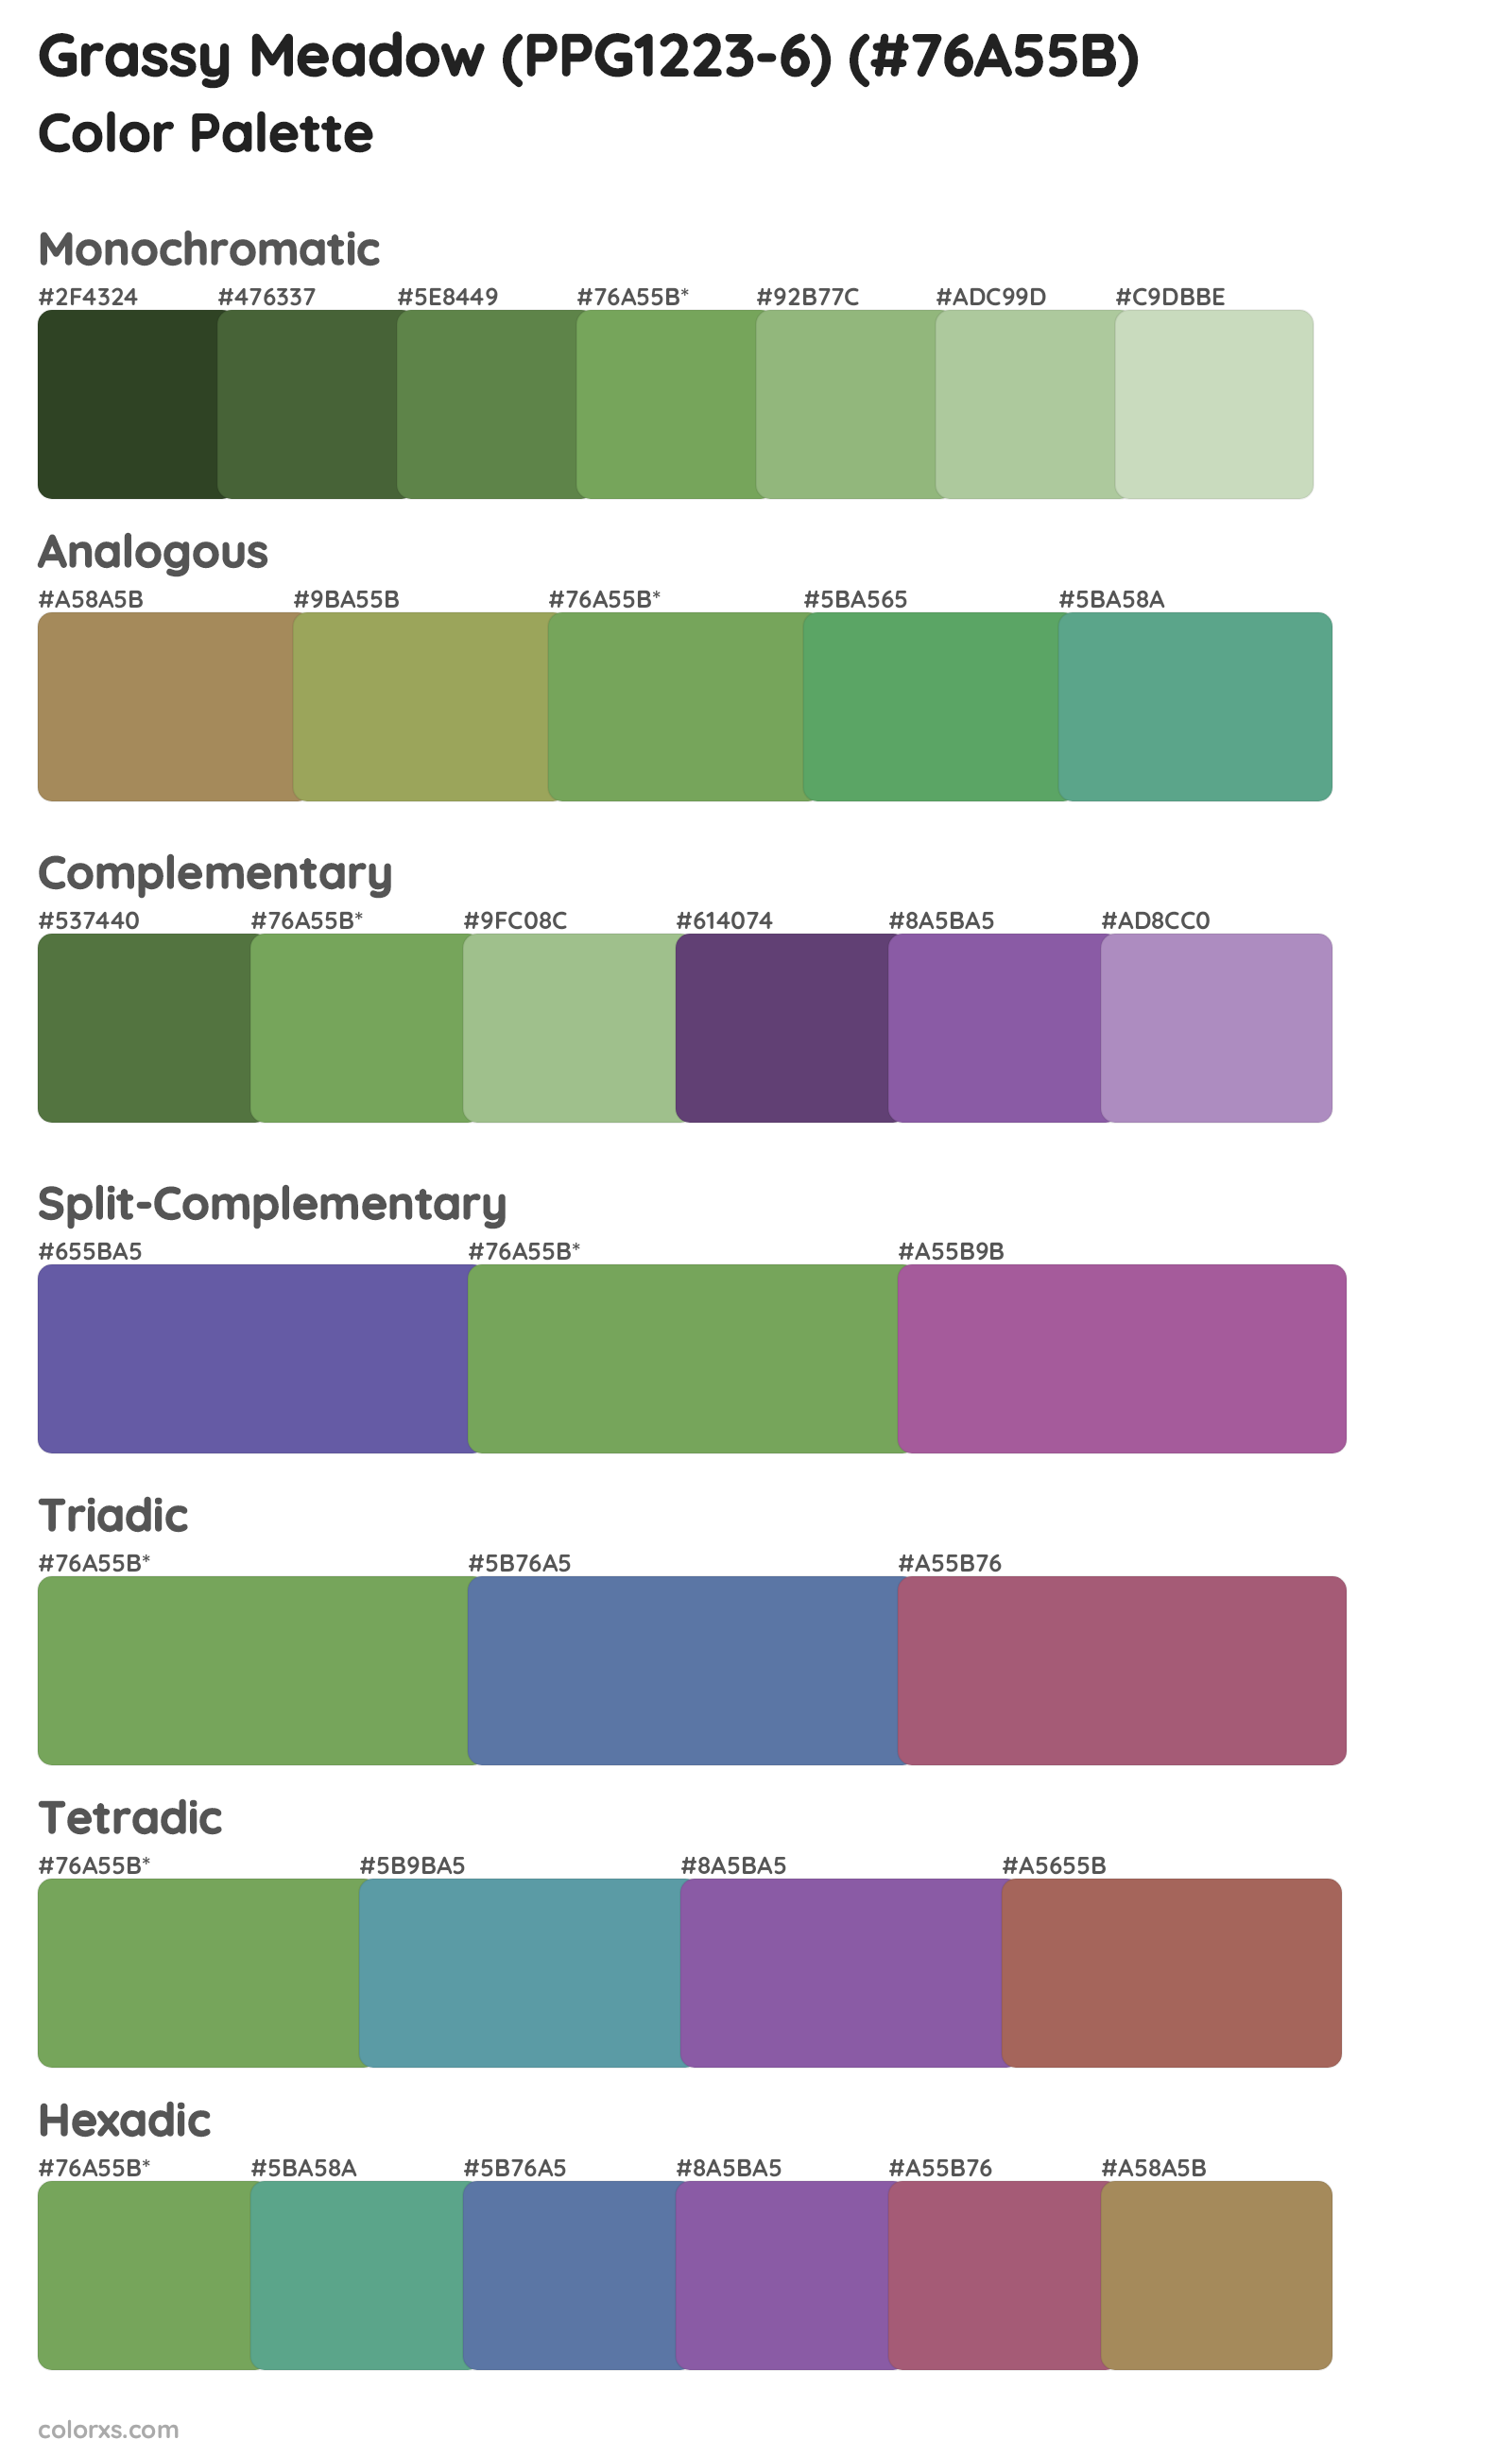 Grassy Meadow (PPG1223-6) Color Scheme Palettes